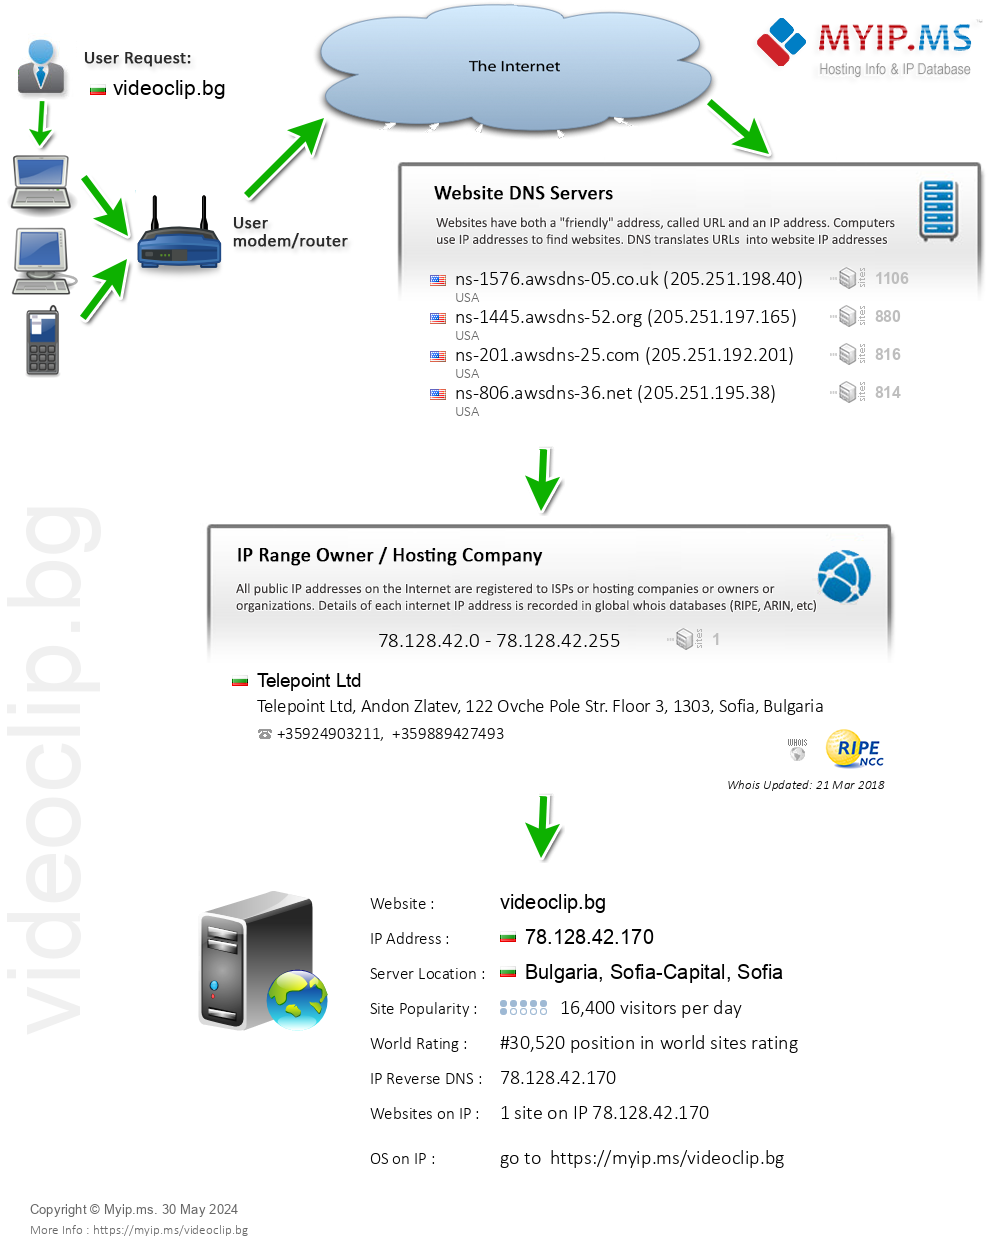 Videoclip.bg - Website Hosting Visual IP Diagram